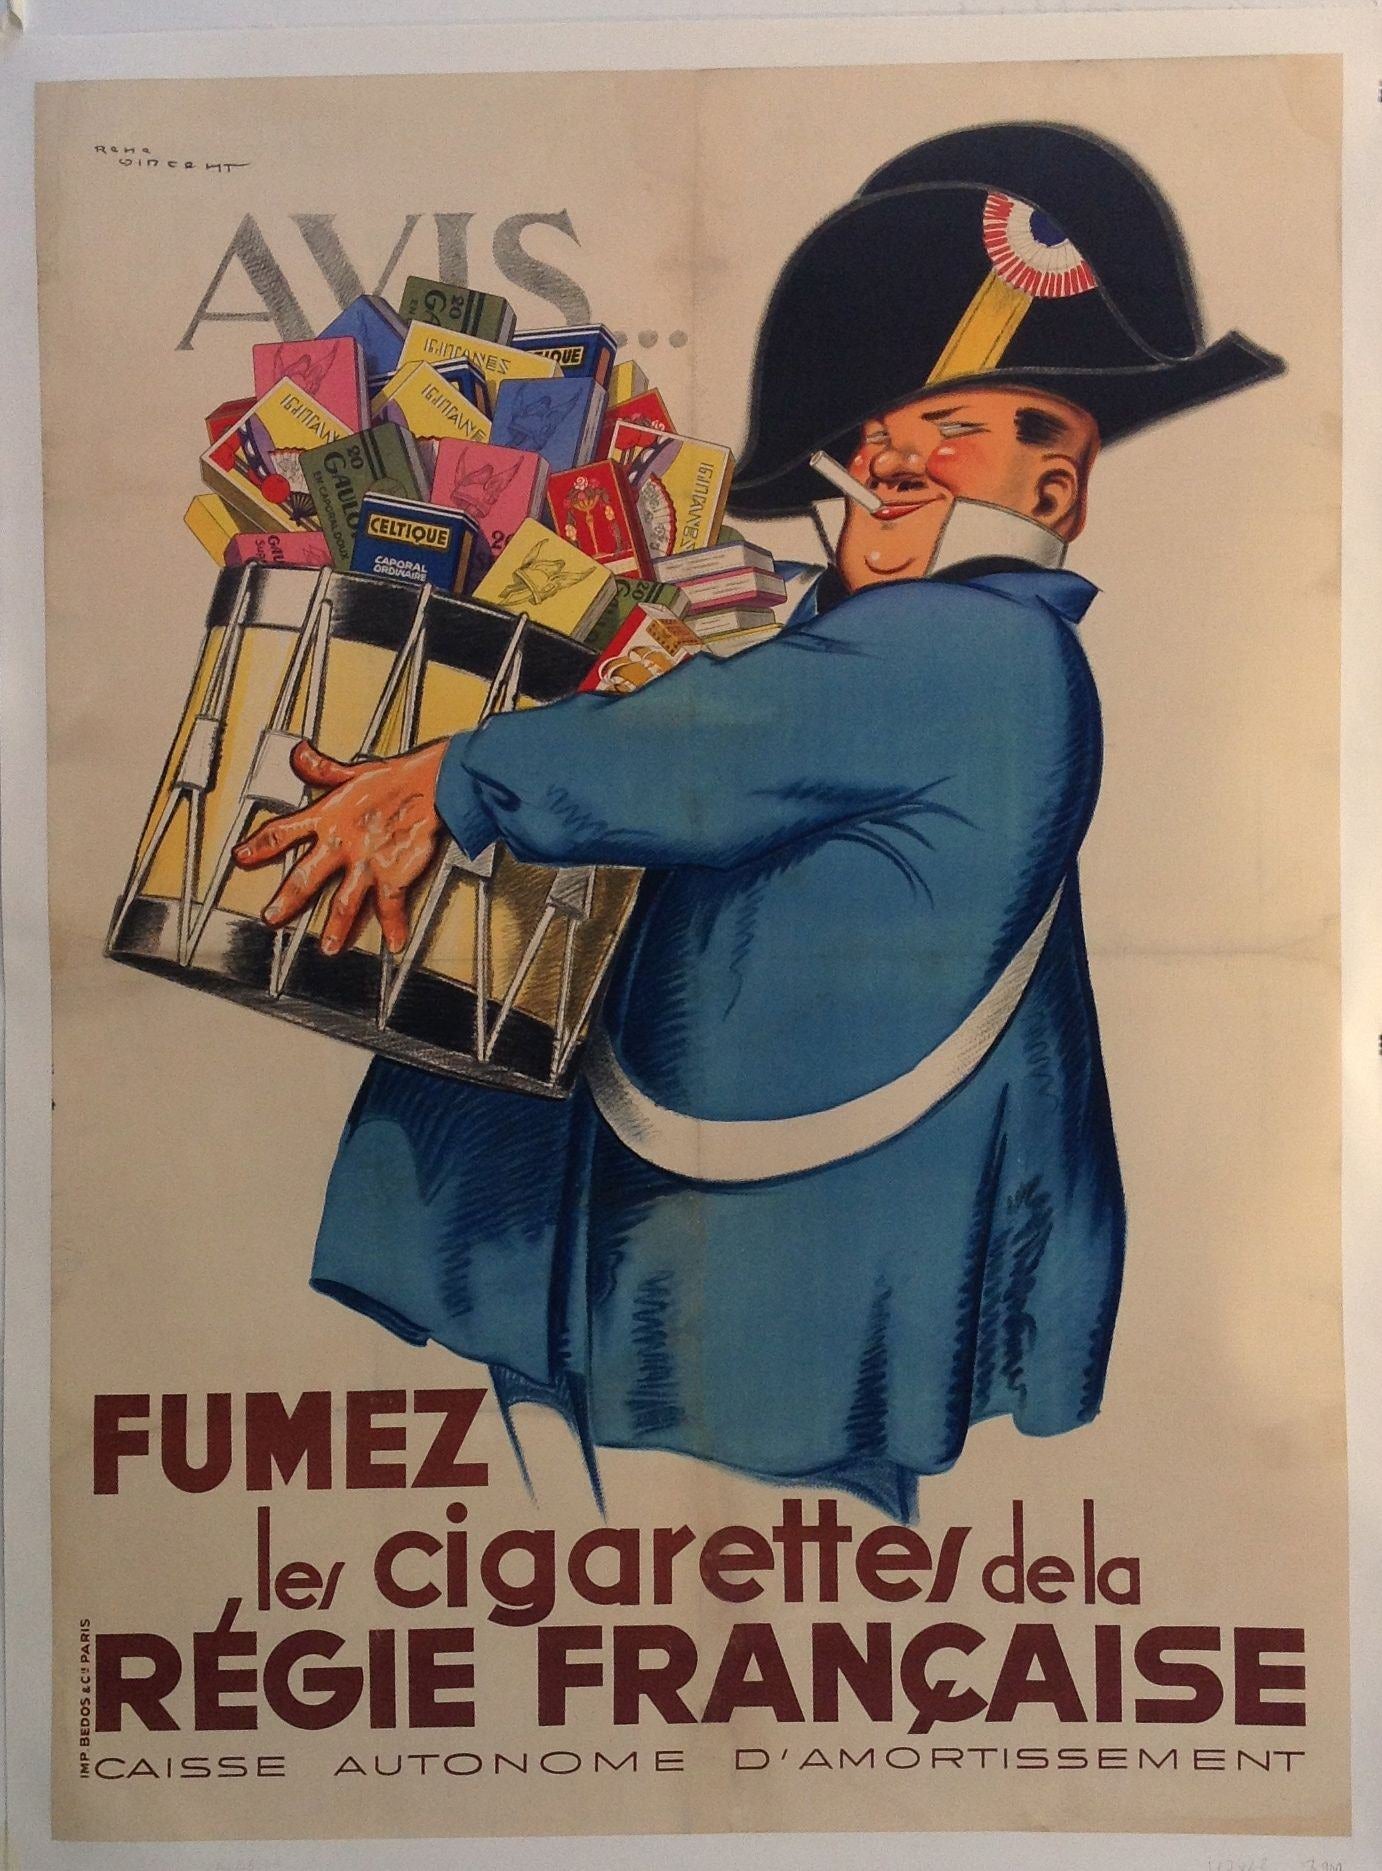 Fumez le cigarettes de la Regie Francaise